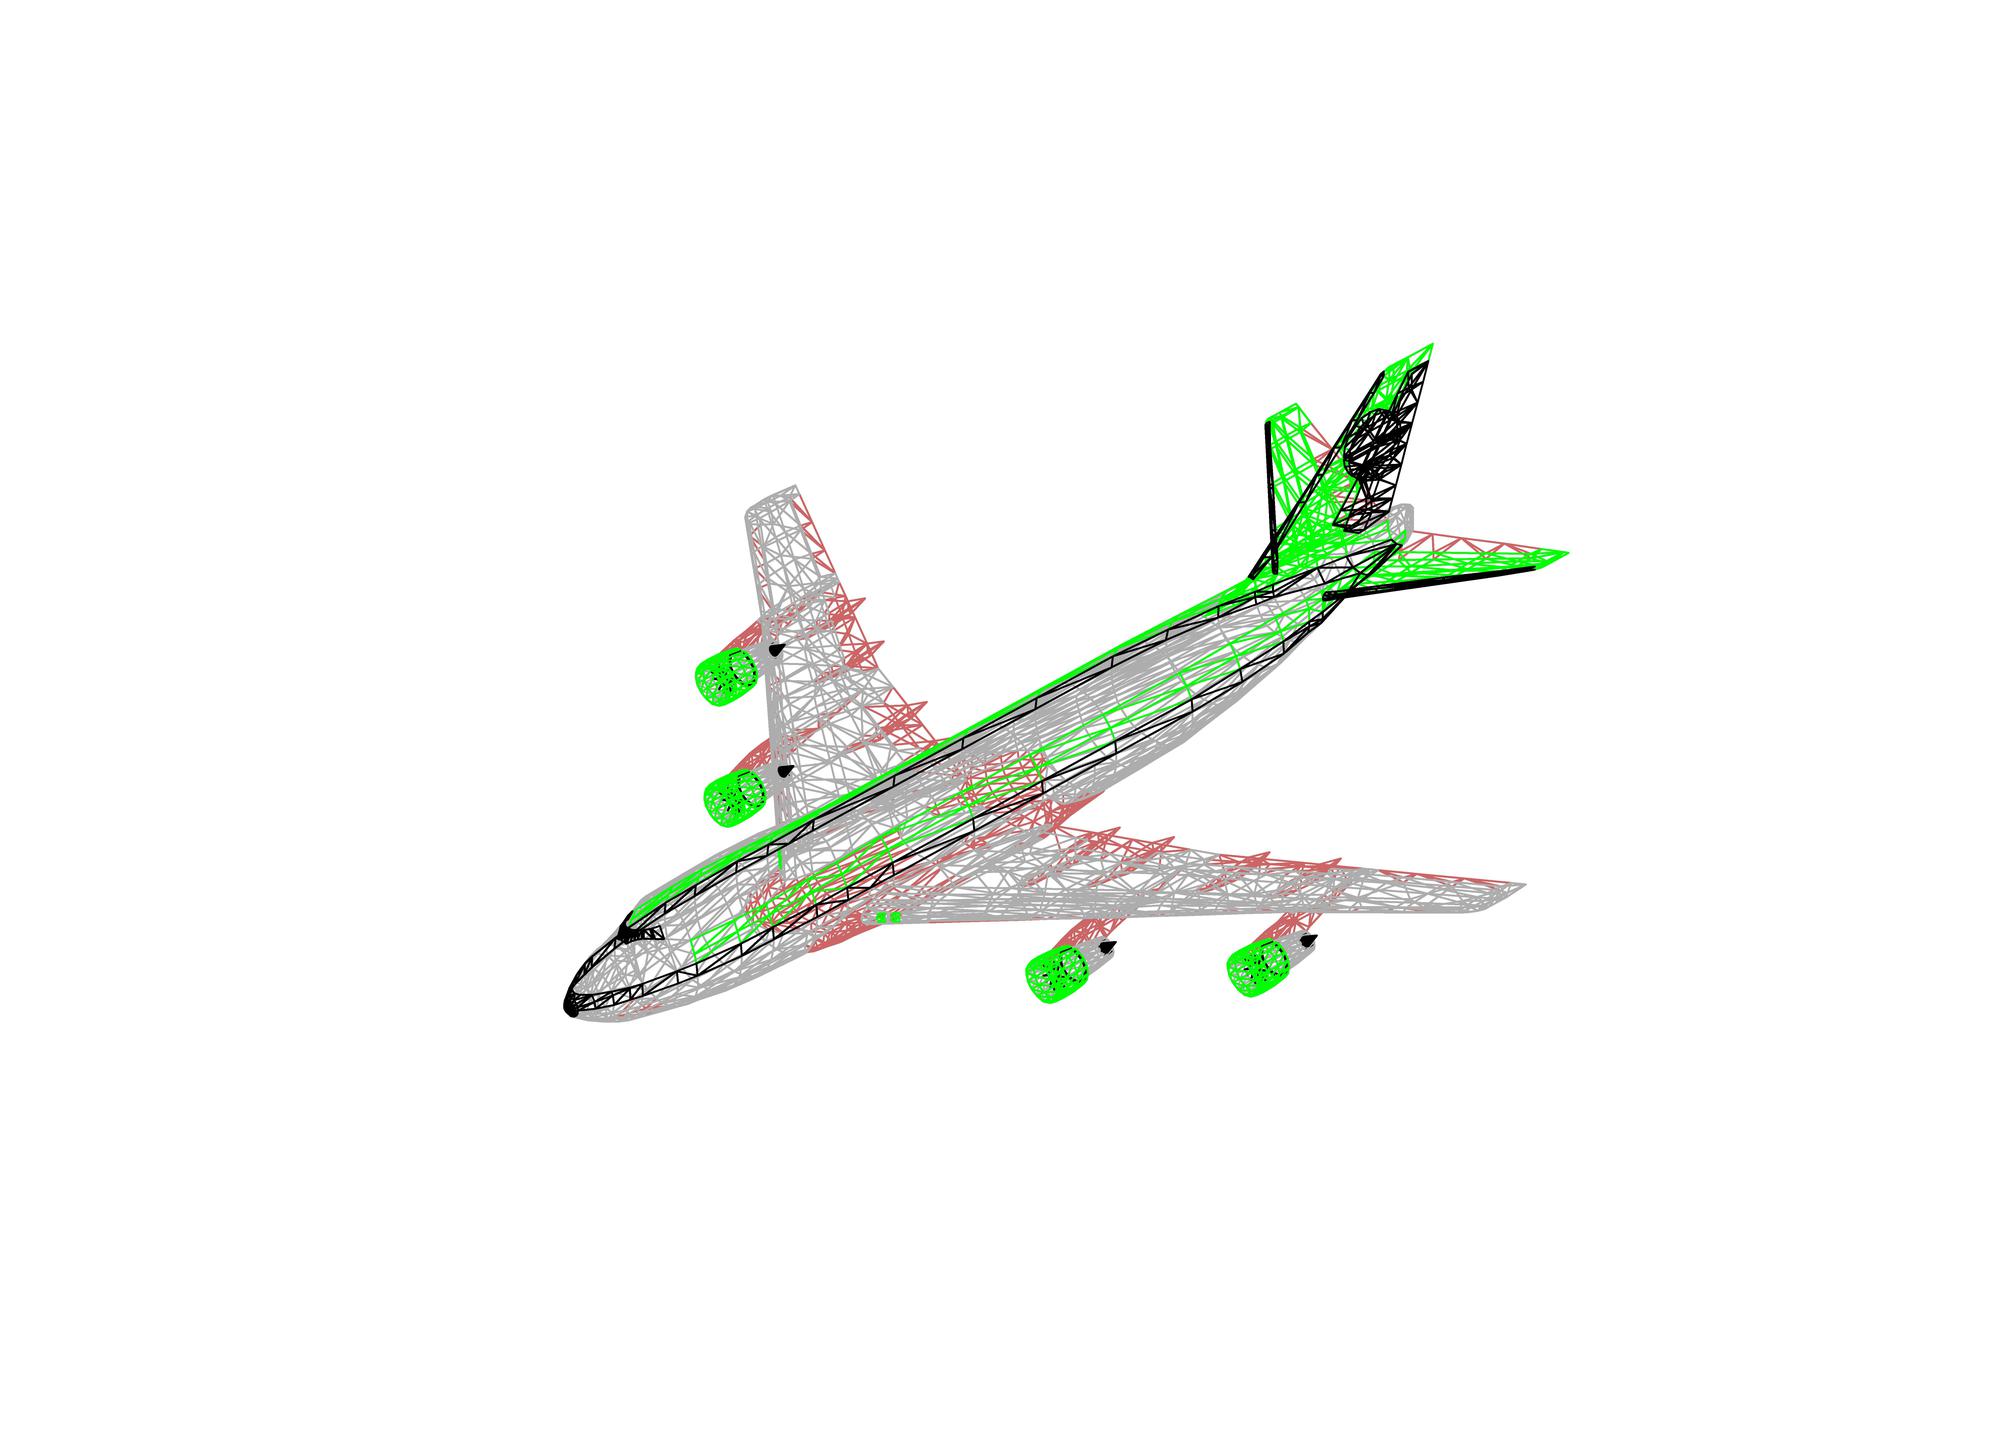 Aereo 3D 747 2 dwg